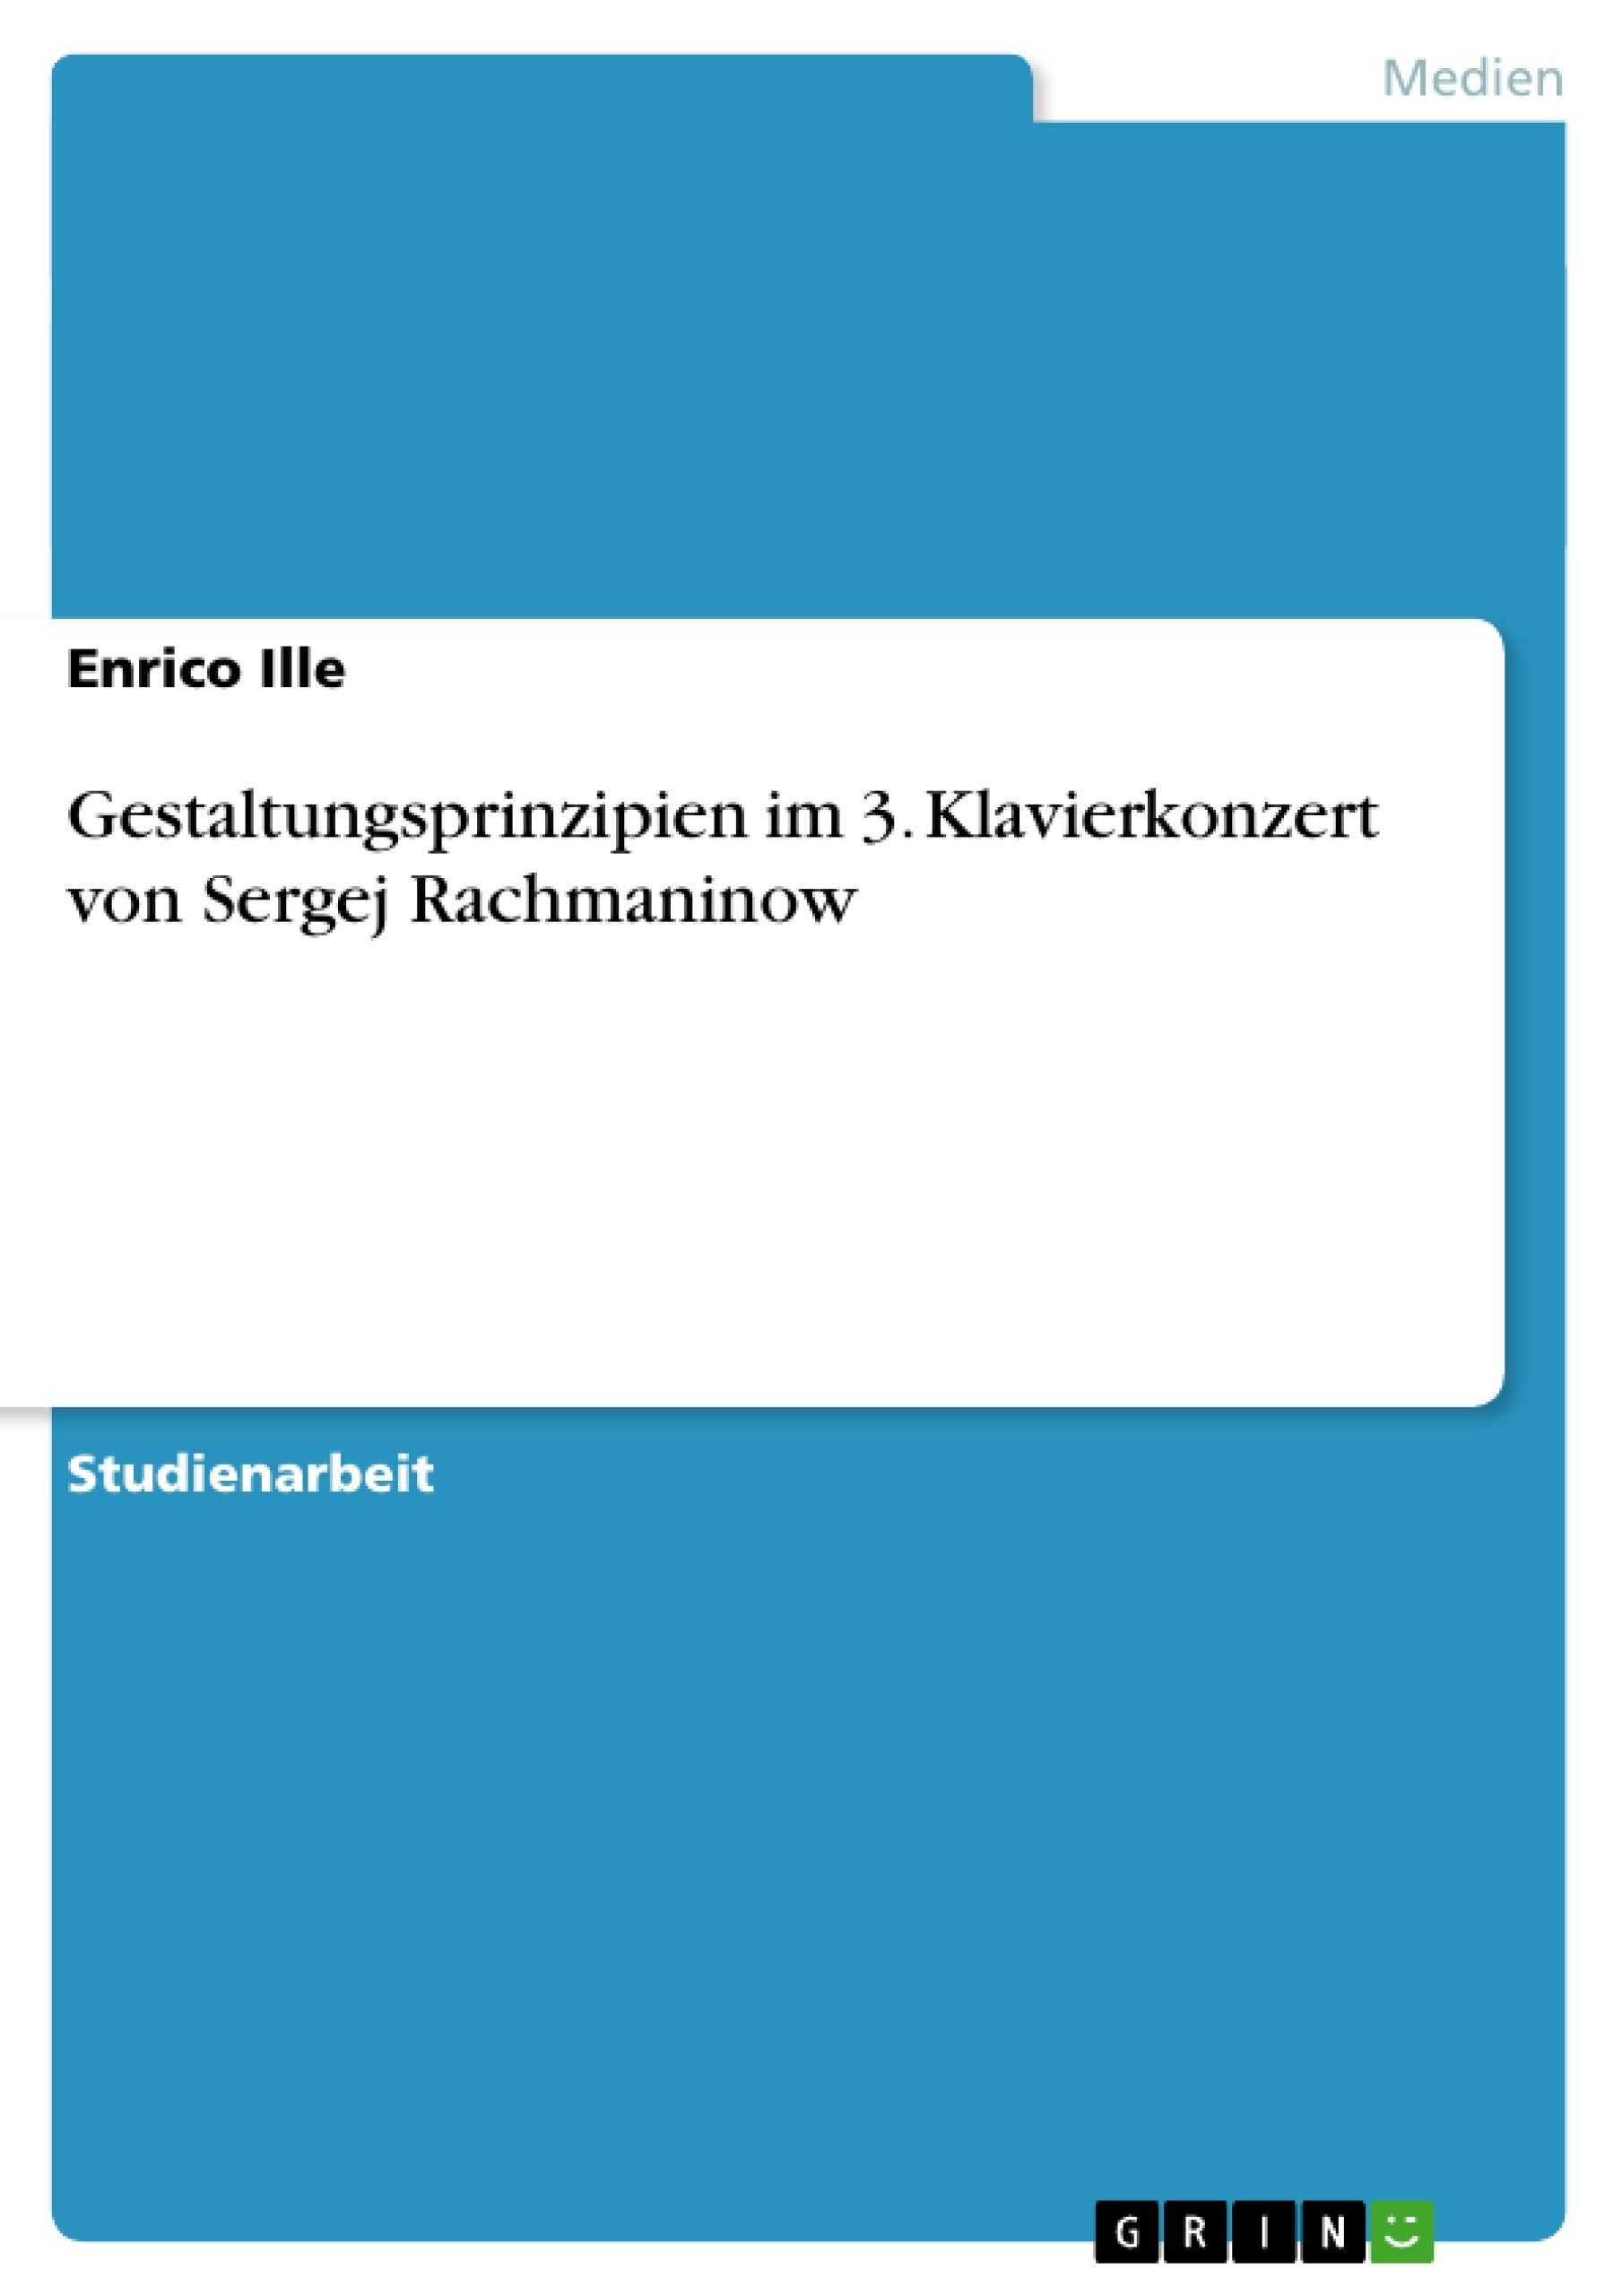 Título: Gestaltungsprinzipien im 3. Klavierkonzert  von Sergej Rachmaninow